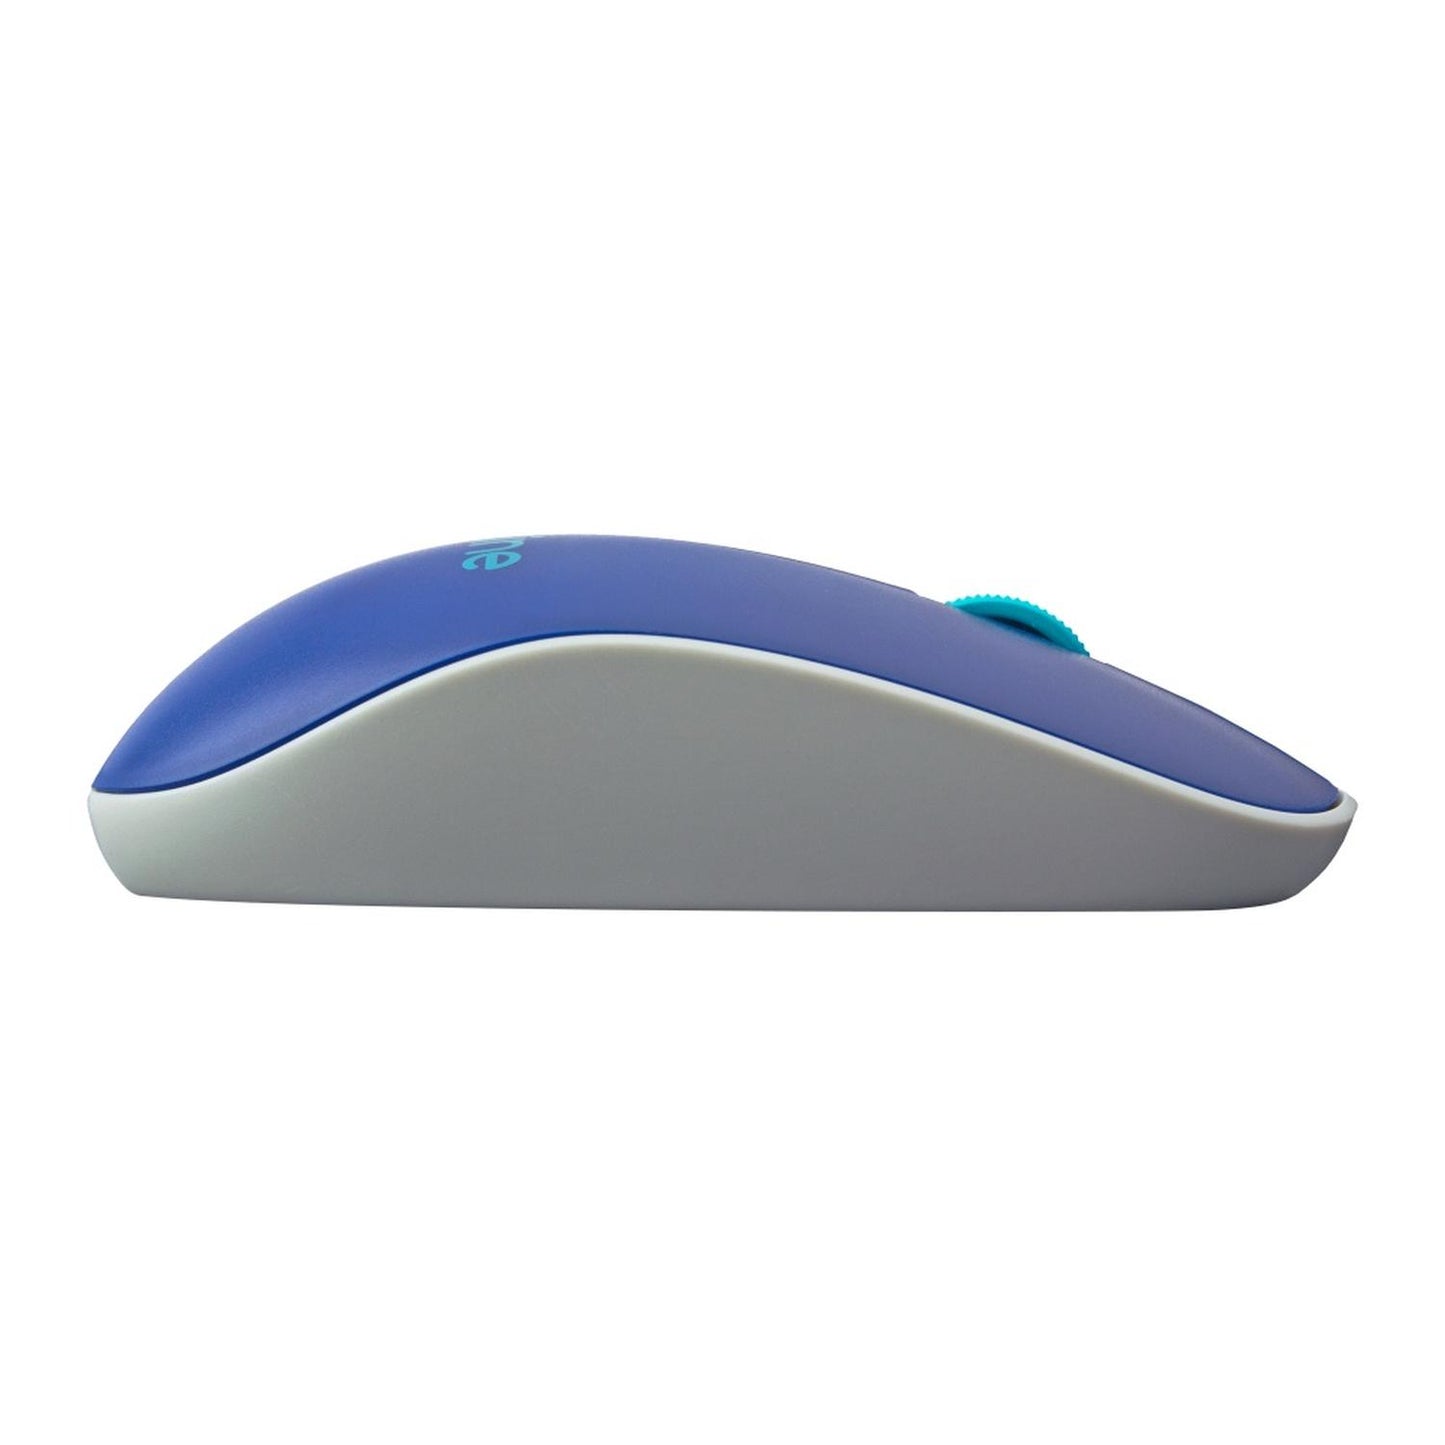 Mouse inalámbrico Viva Azul 1000 dpi/EL-995128